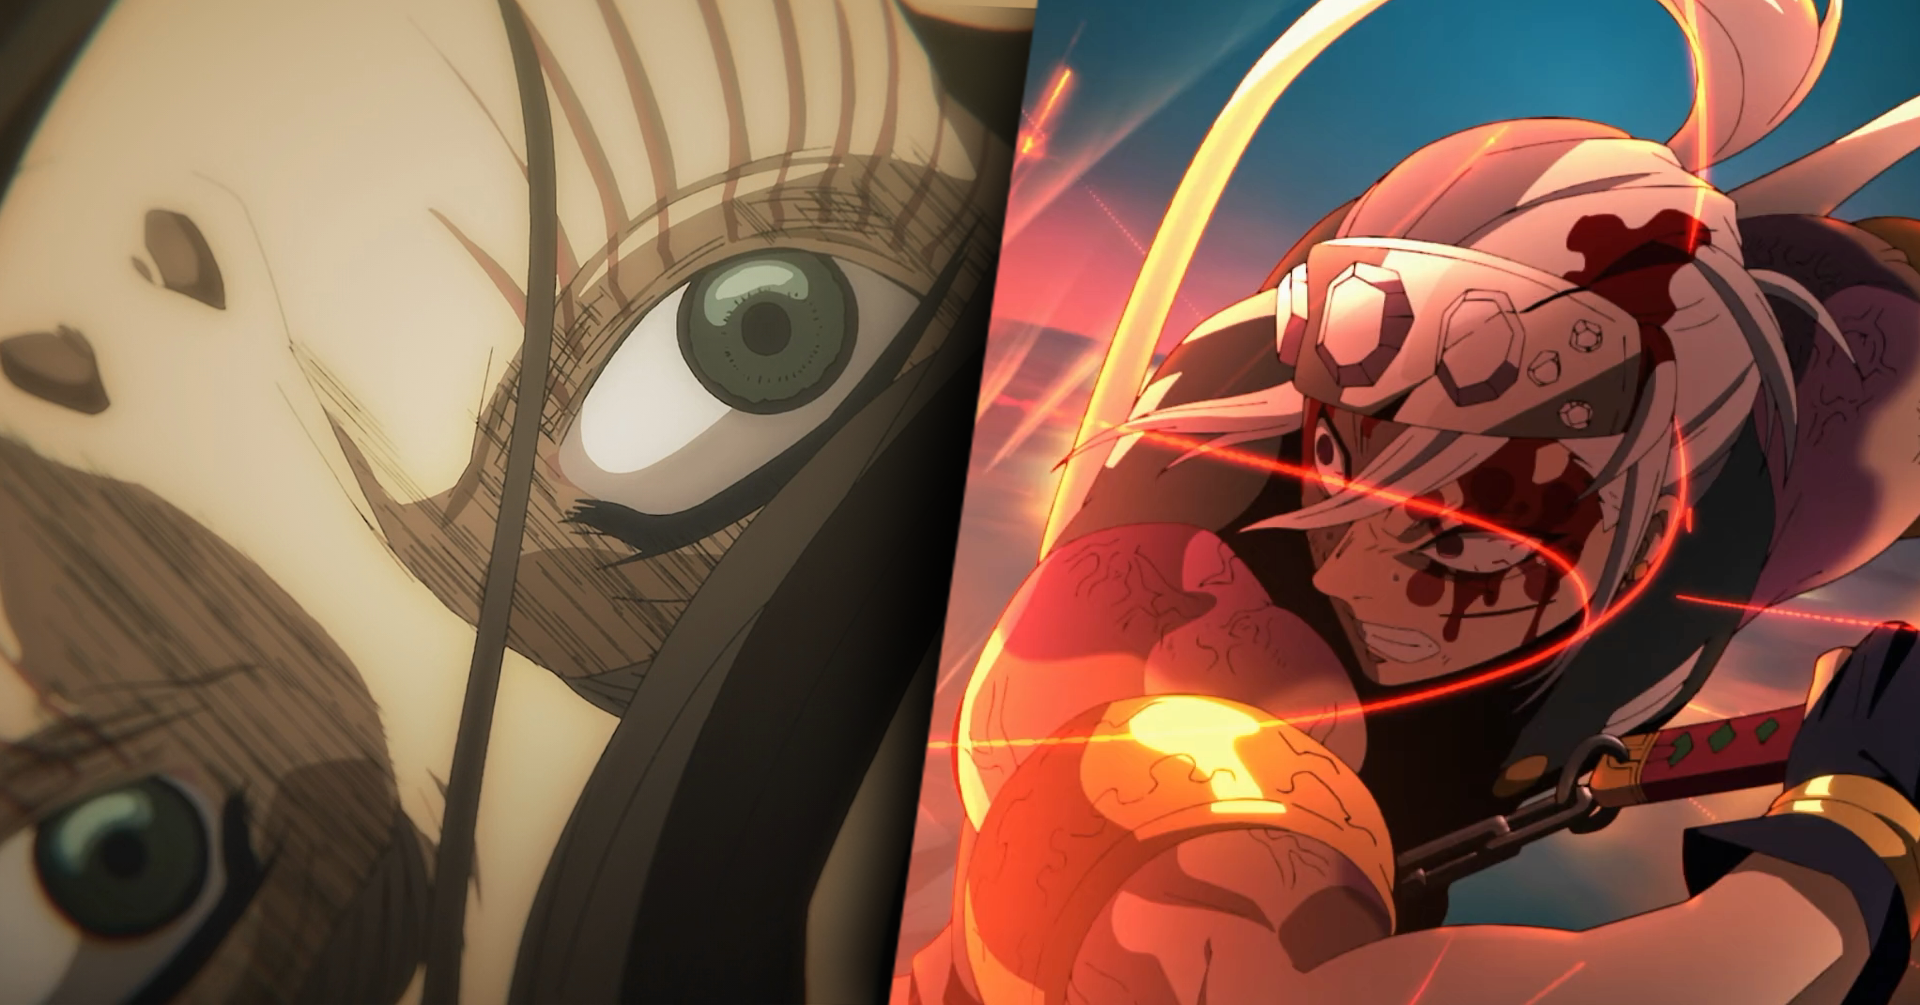 Lançamentos de anime em 2021: Continuação de Demon Slayer, Attack